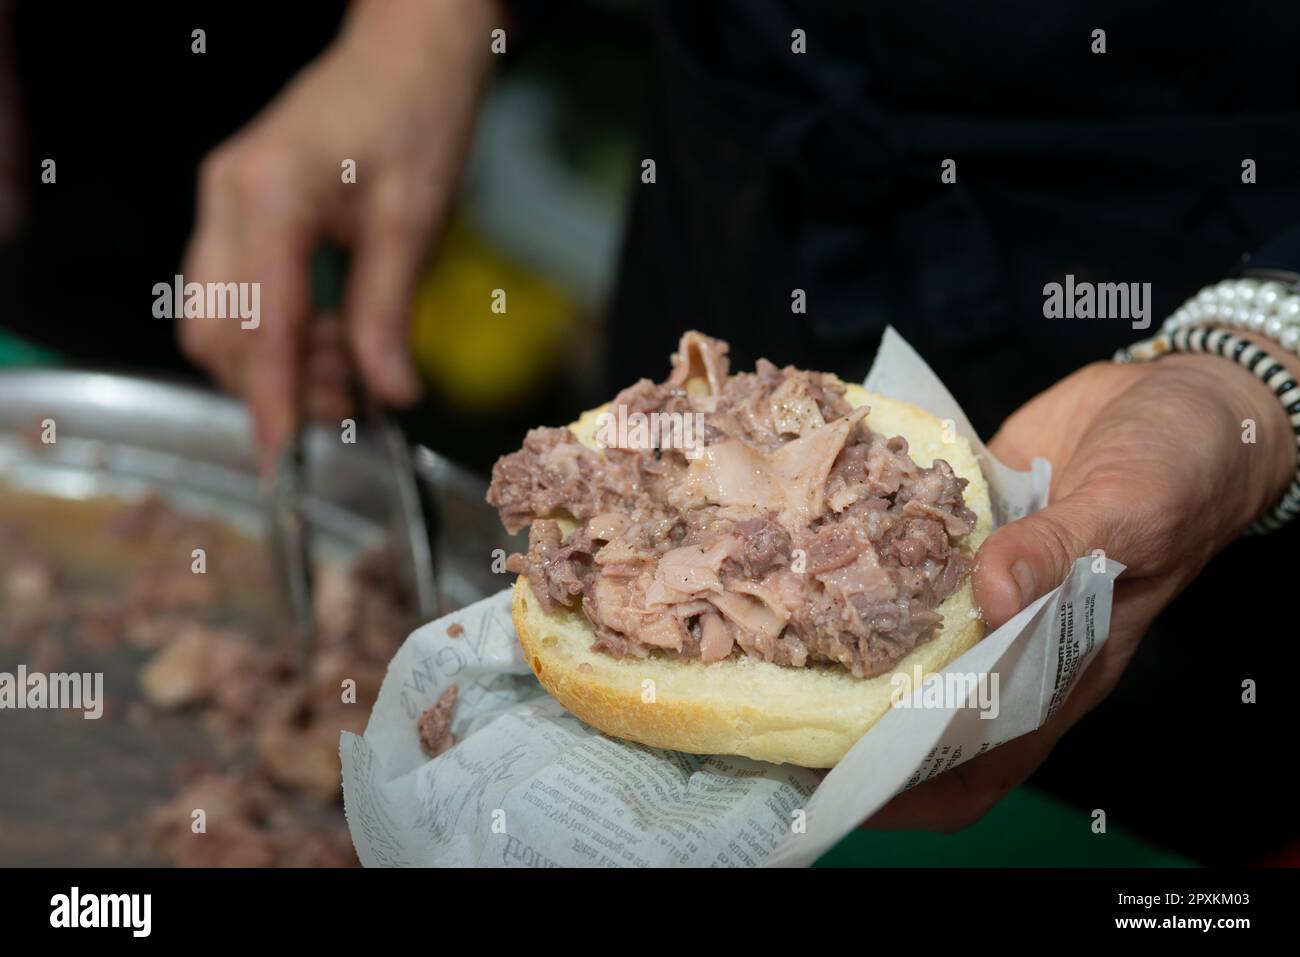 Préparation de Sandwich avec Lampredotto, l'alimentation de rue typique de Toscane Banque D'Images